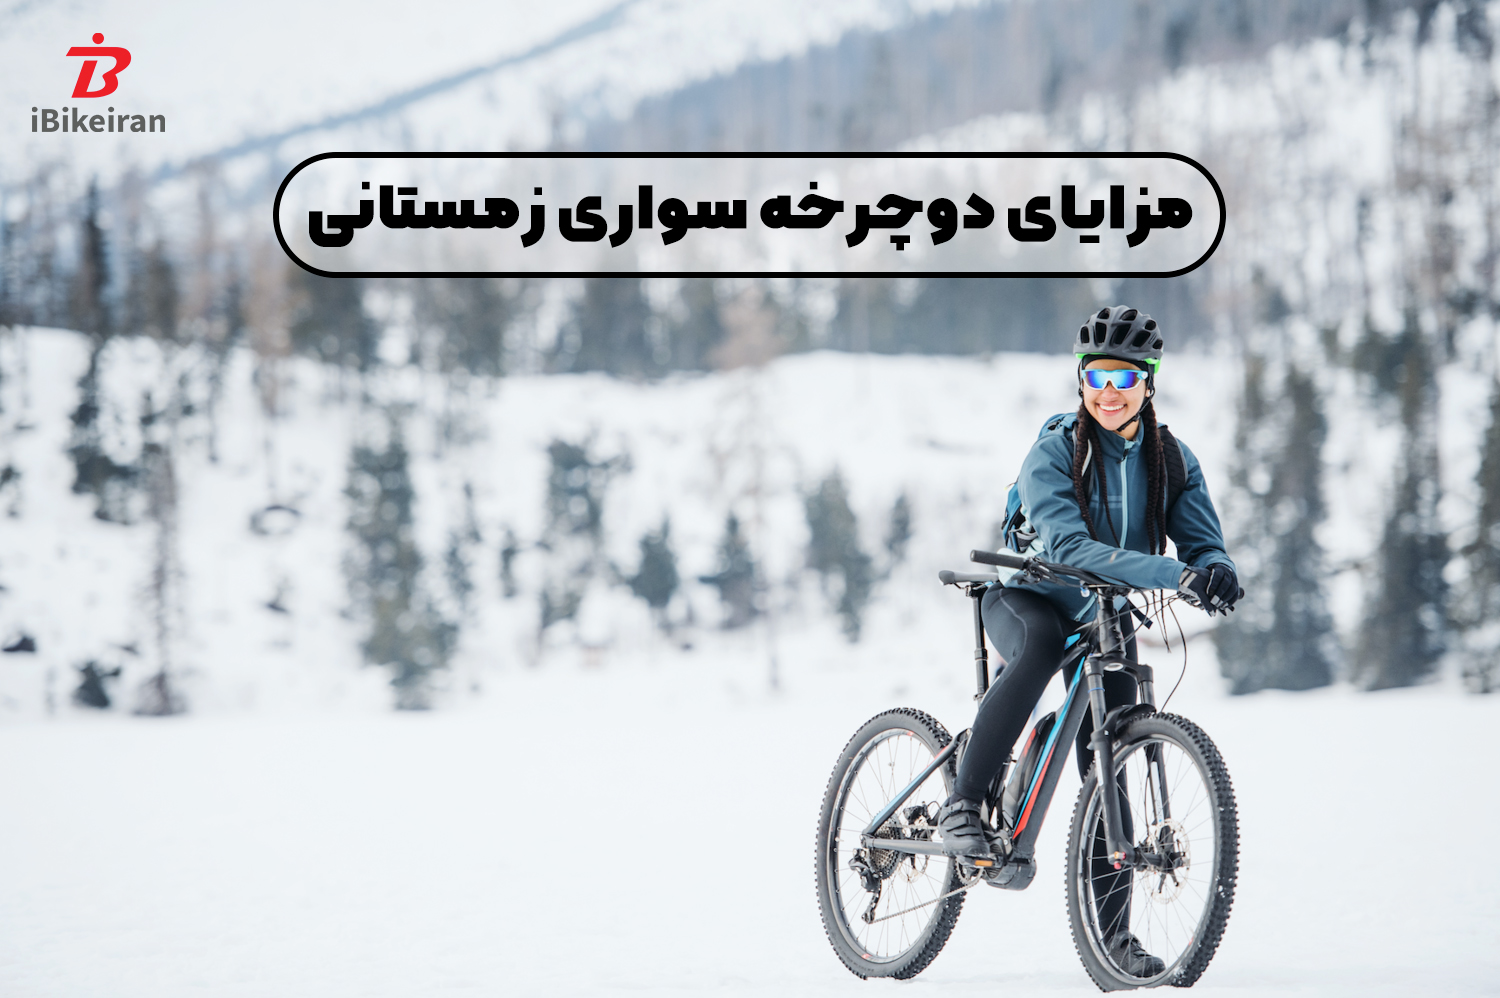 11 مزیت دوچرخه سواری در فصل زمستان! - آیبایک